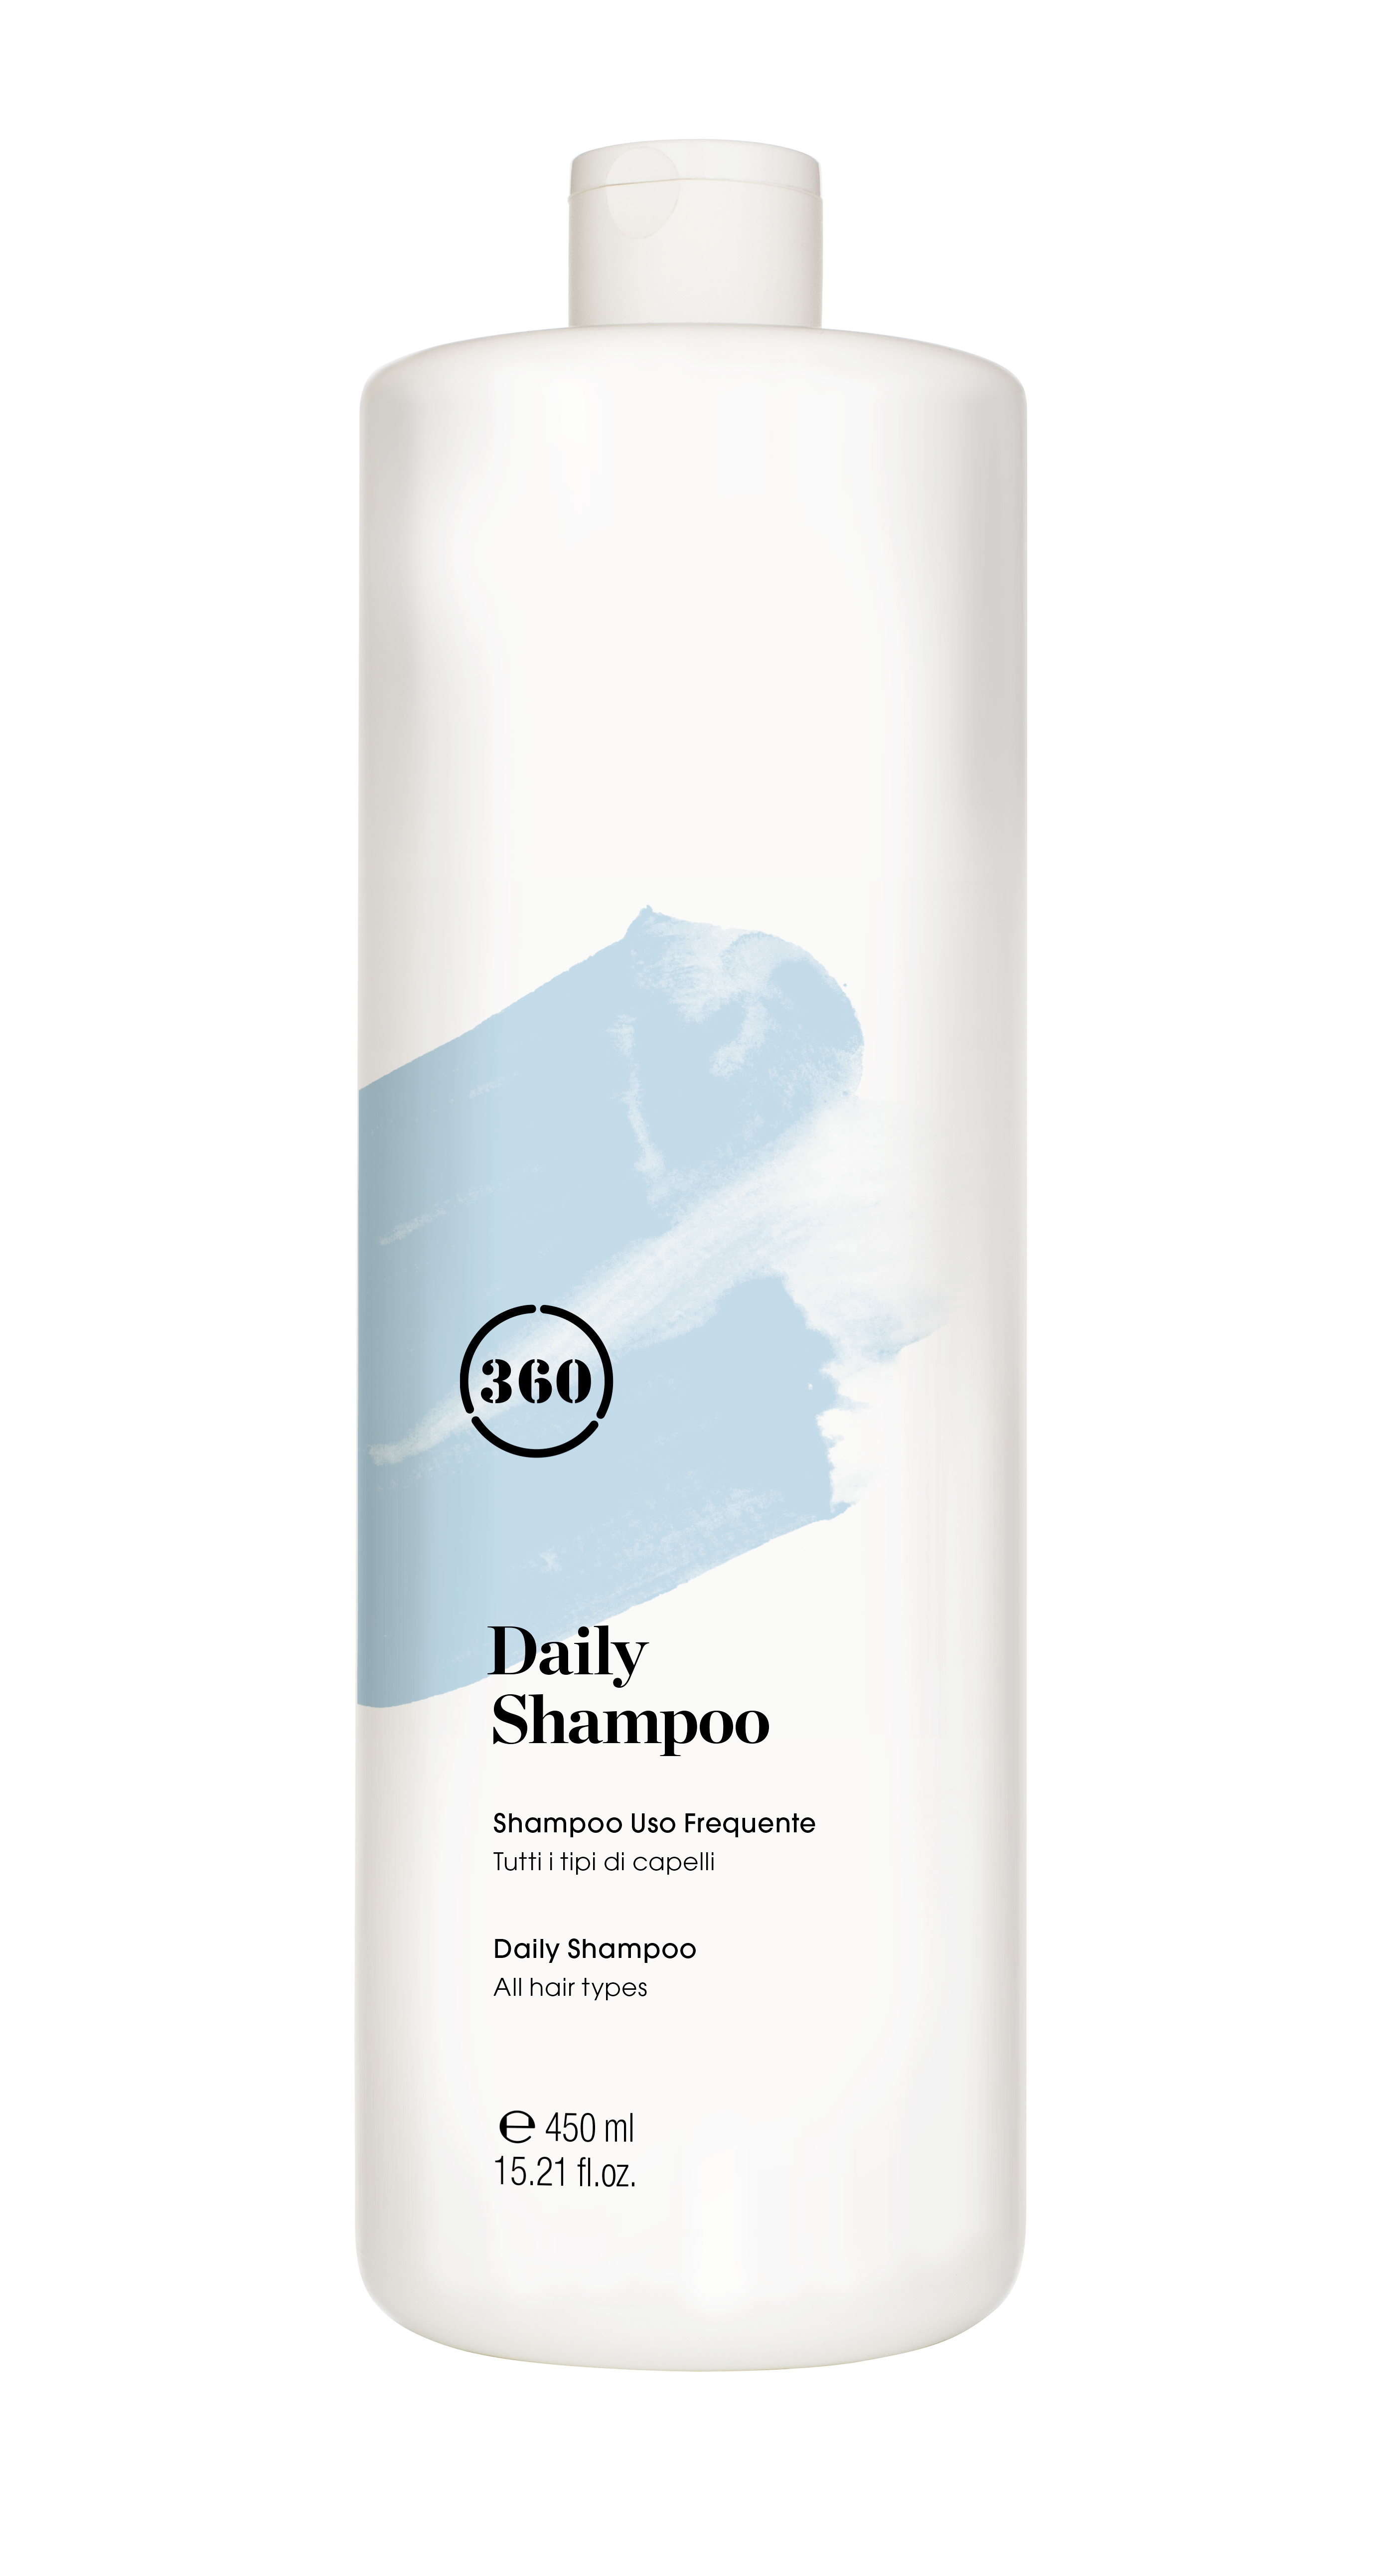 Шампуни для ежедневного применения отзывы. 360 Ежедневный шампунь для волос Daily Shampoo. Ежедневный шампунь для волос Daily Shampoo 450 мл. Шампунь Сильвер 360. Daily Shampoo Kaaral.